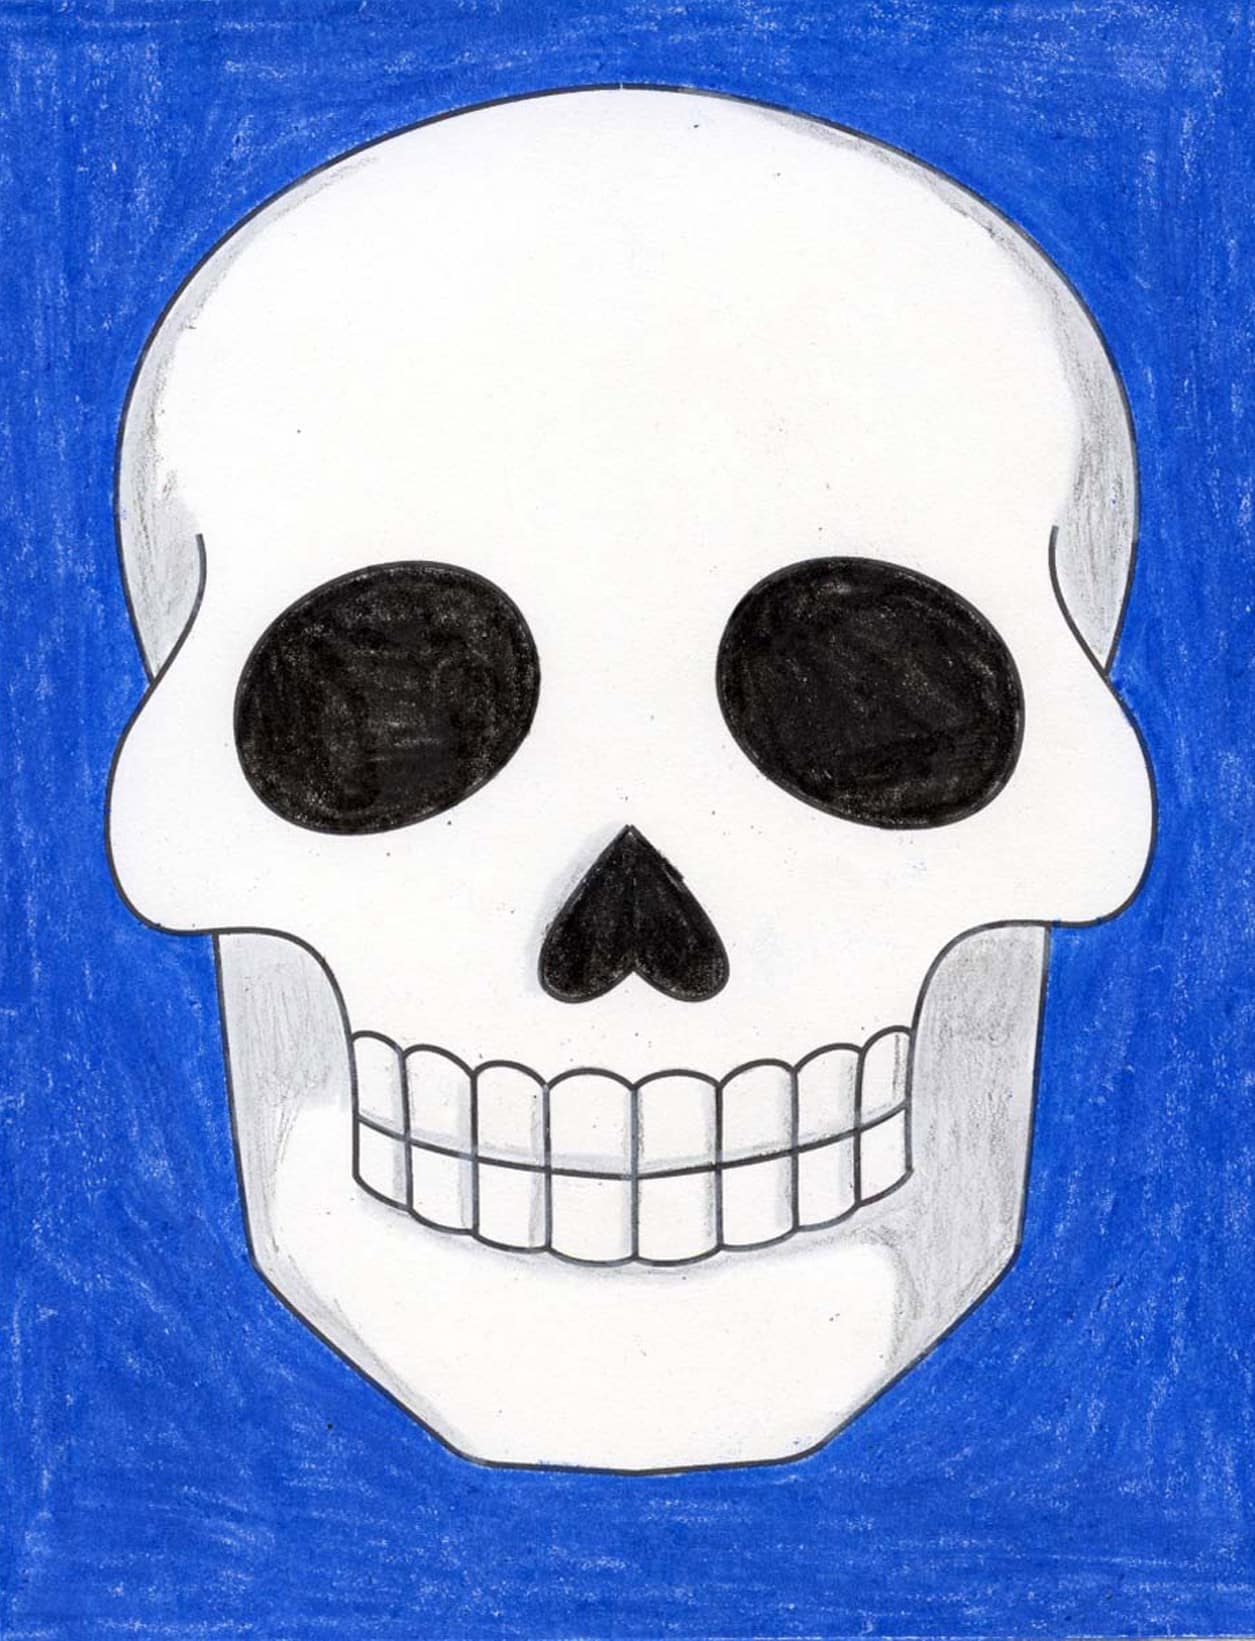 cool easy drawings of skulls